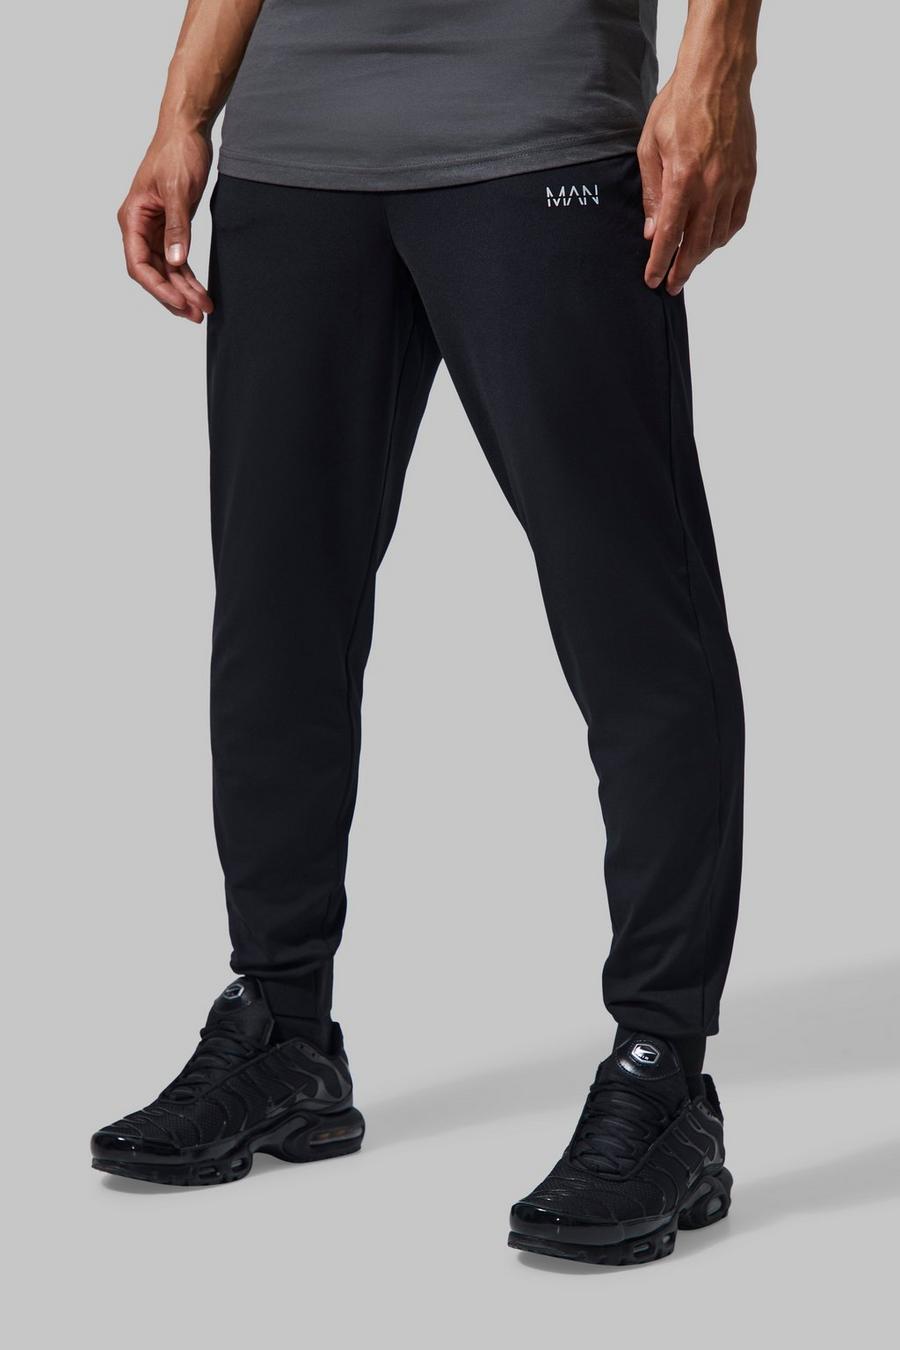 Pantaloni tuta da palestra Man Active con vita fissa, Black nero image number 1